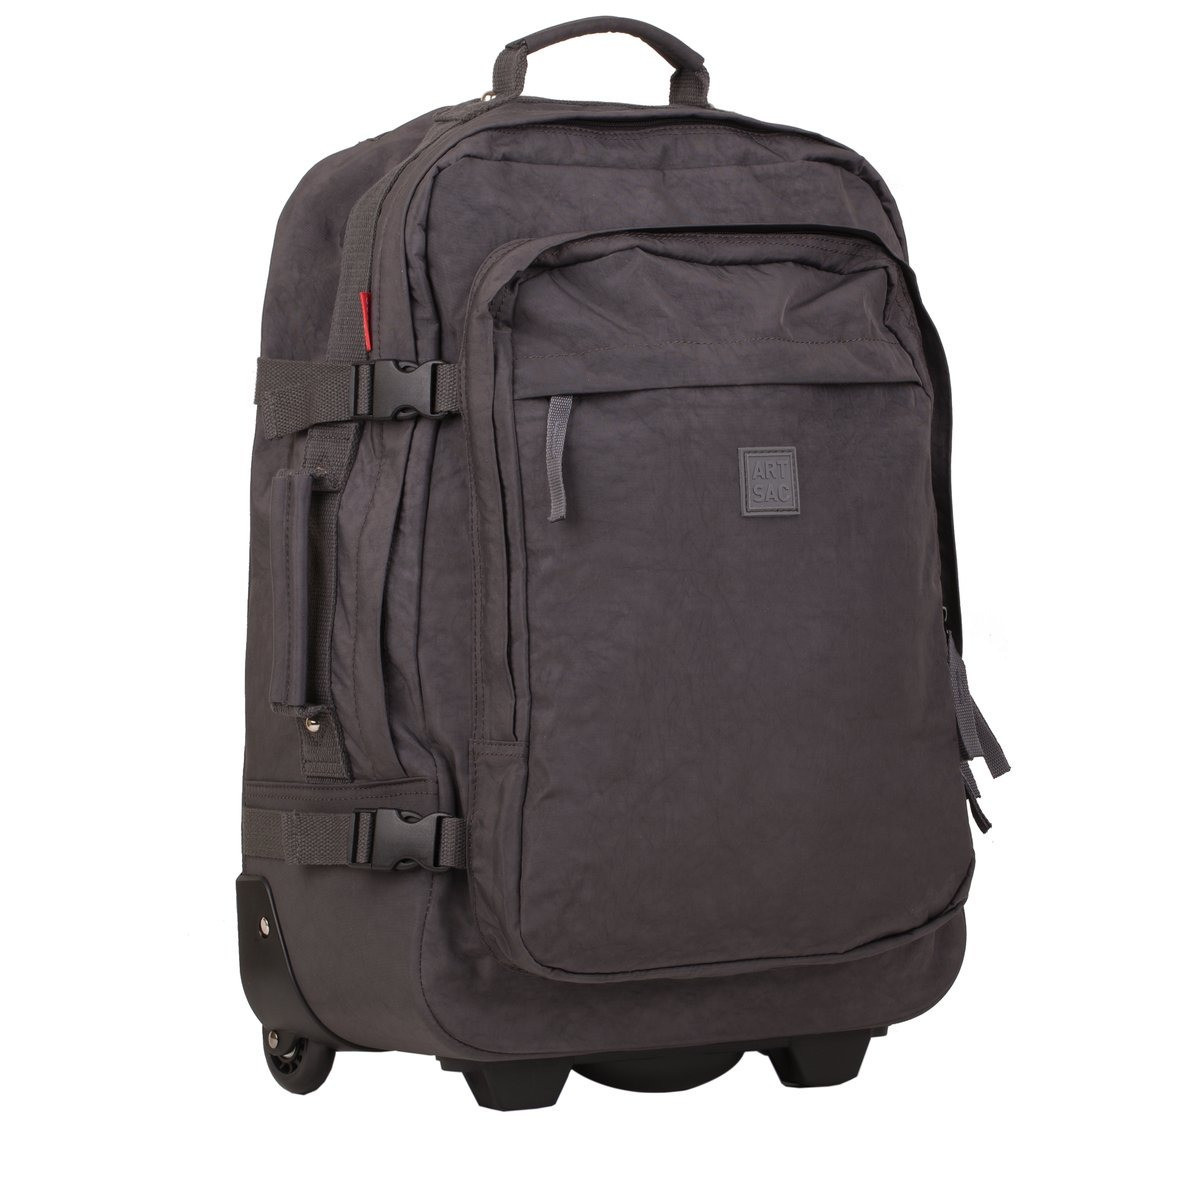 Medium Luggage / Trolley Case - Frnt Pkt